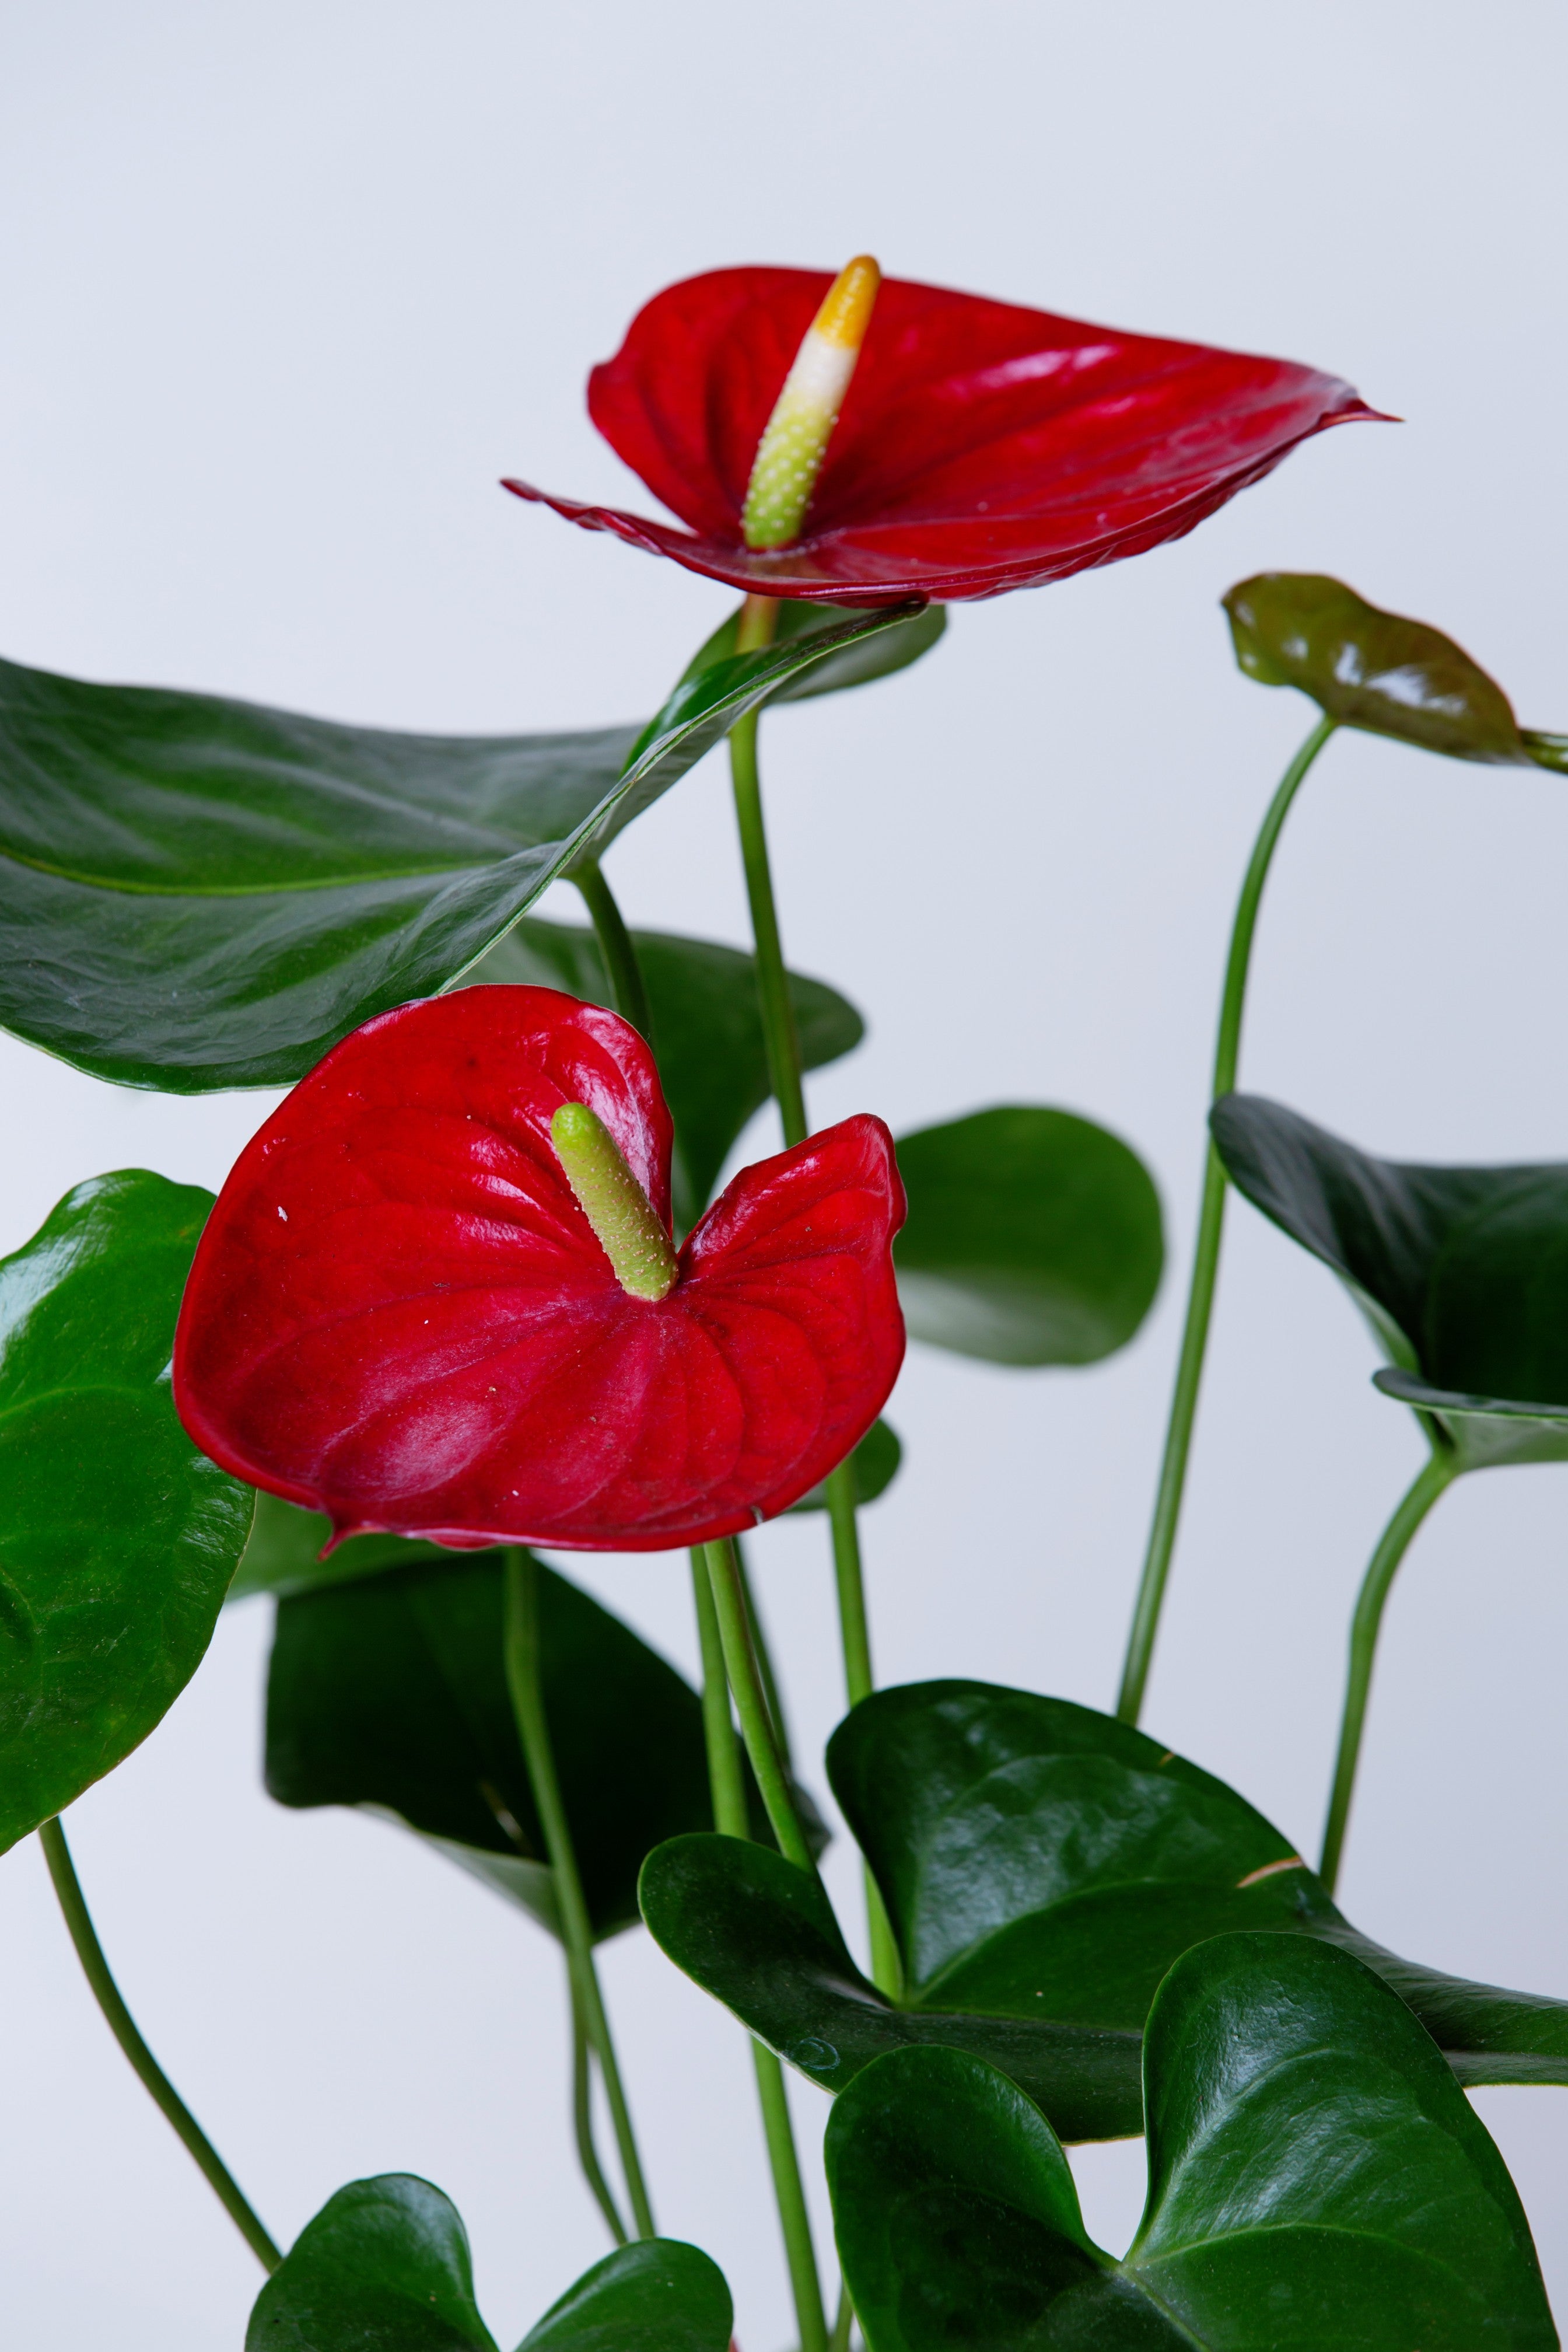 – Laceleaf AVS Anthurium Lifestyle Plant